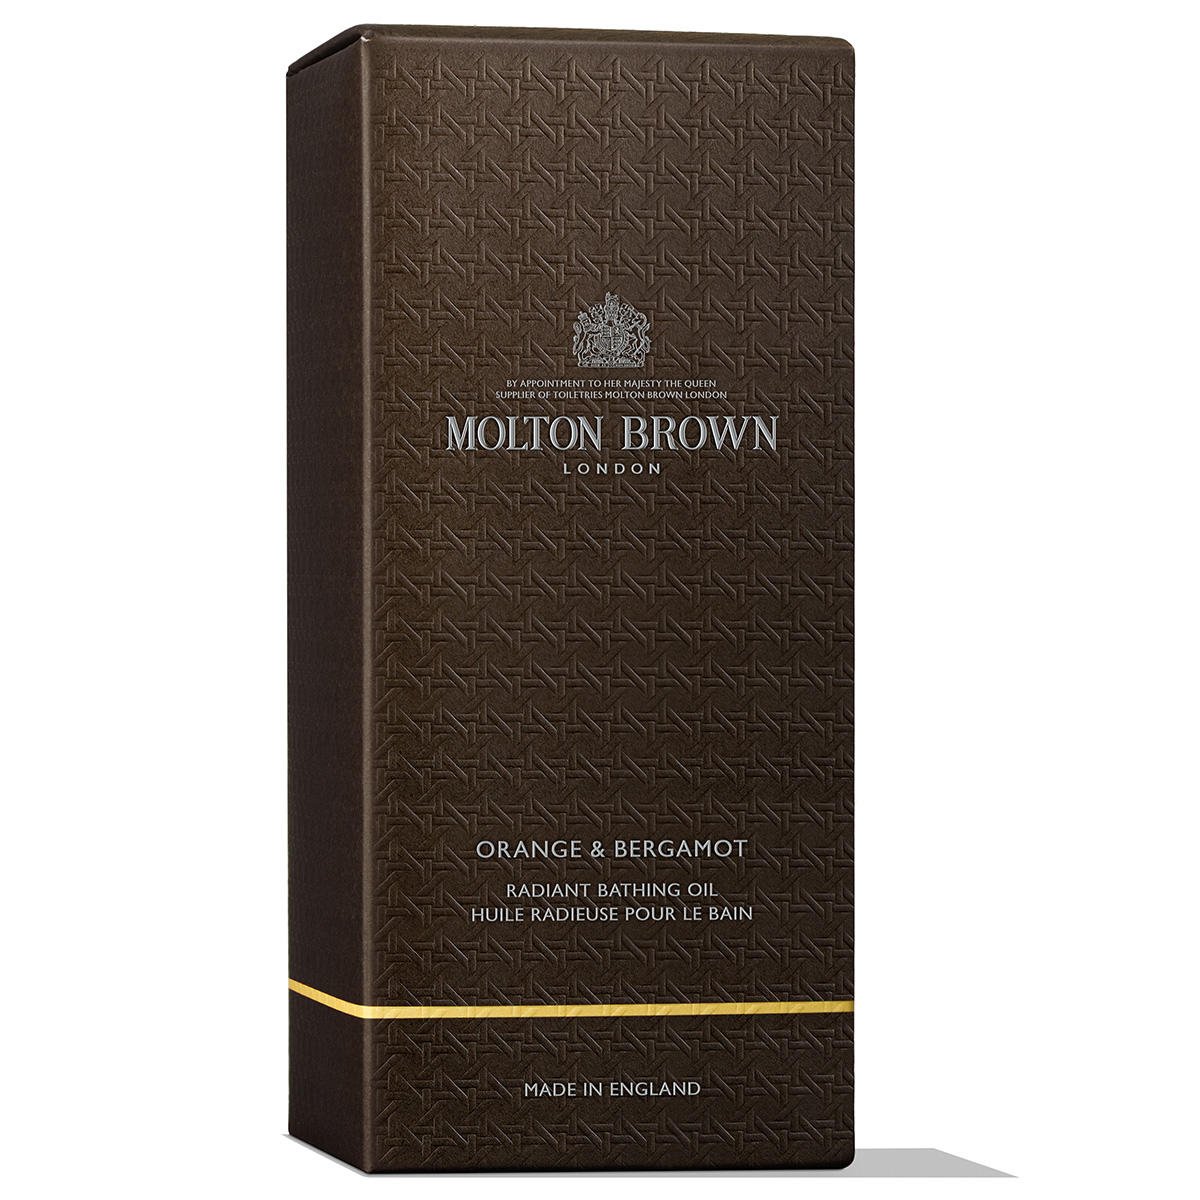 MOLTON BROWN Orange & Bergamot Radiant Bathing Oil 200 ml - 3